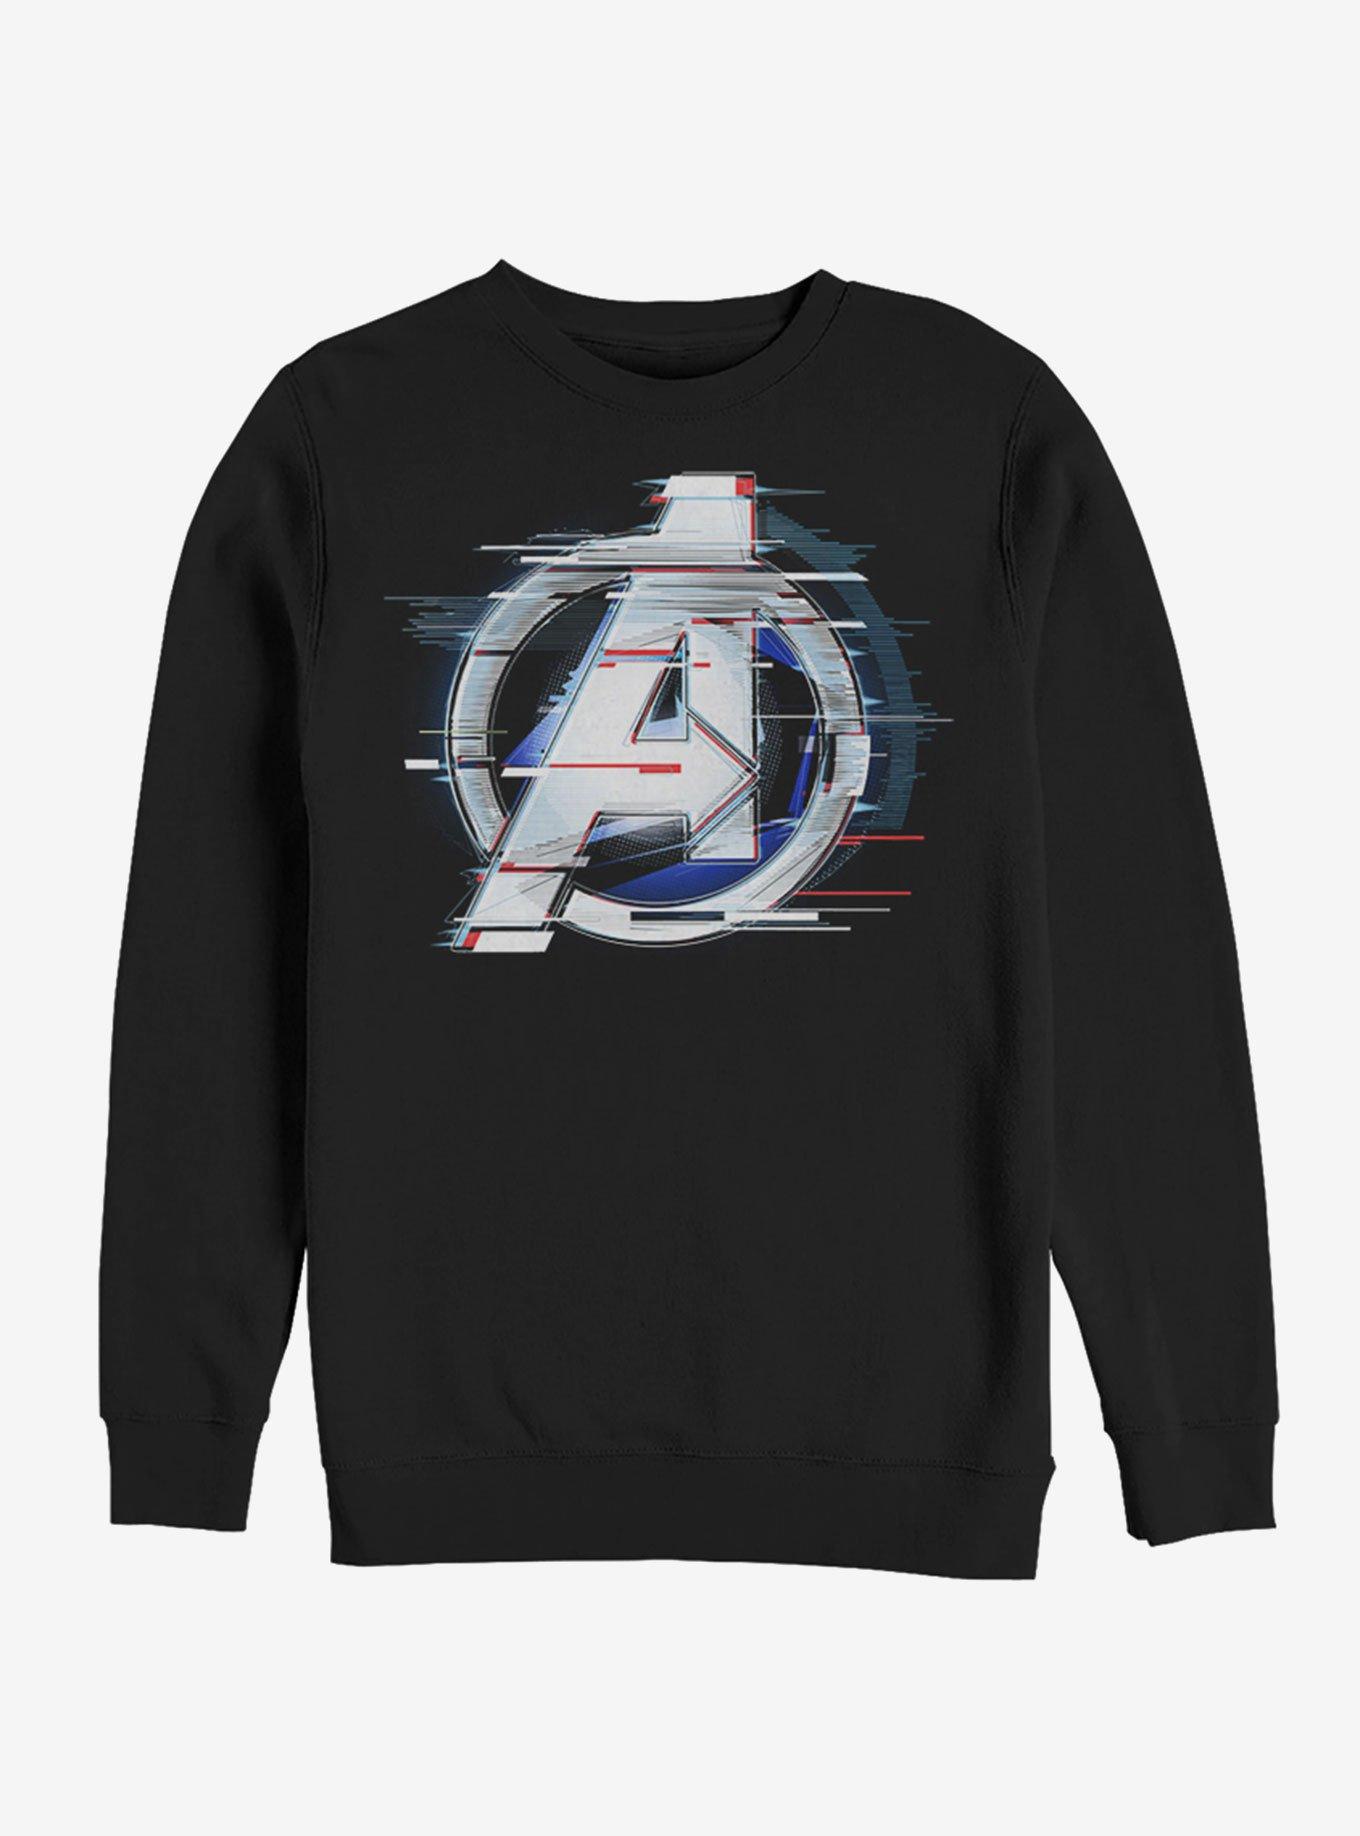 Marvel Avengers Endgame White Flares Sweatshirt